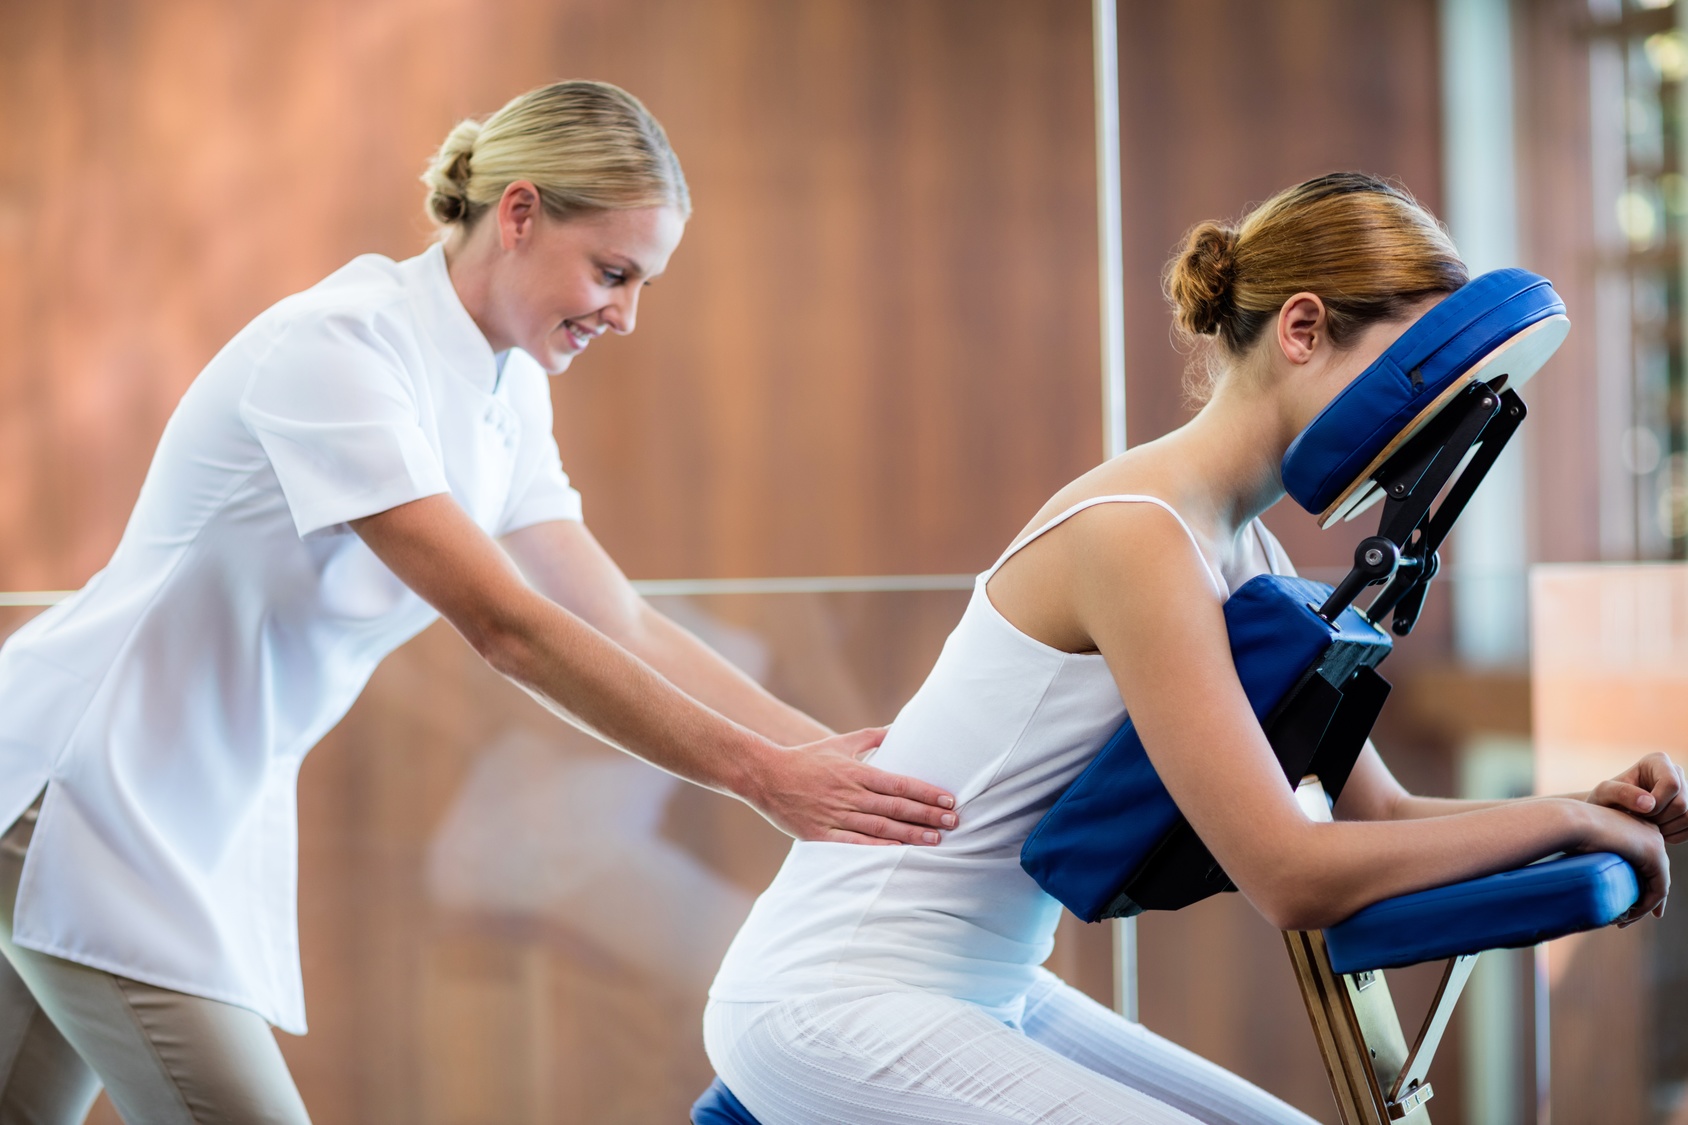 Top 6 Những Ưu Điểm Tuyệt Vời Của Ghế Massage Trị Liệu Không Nên Bỏ Qua